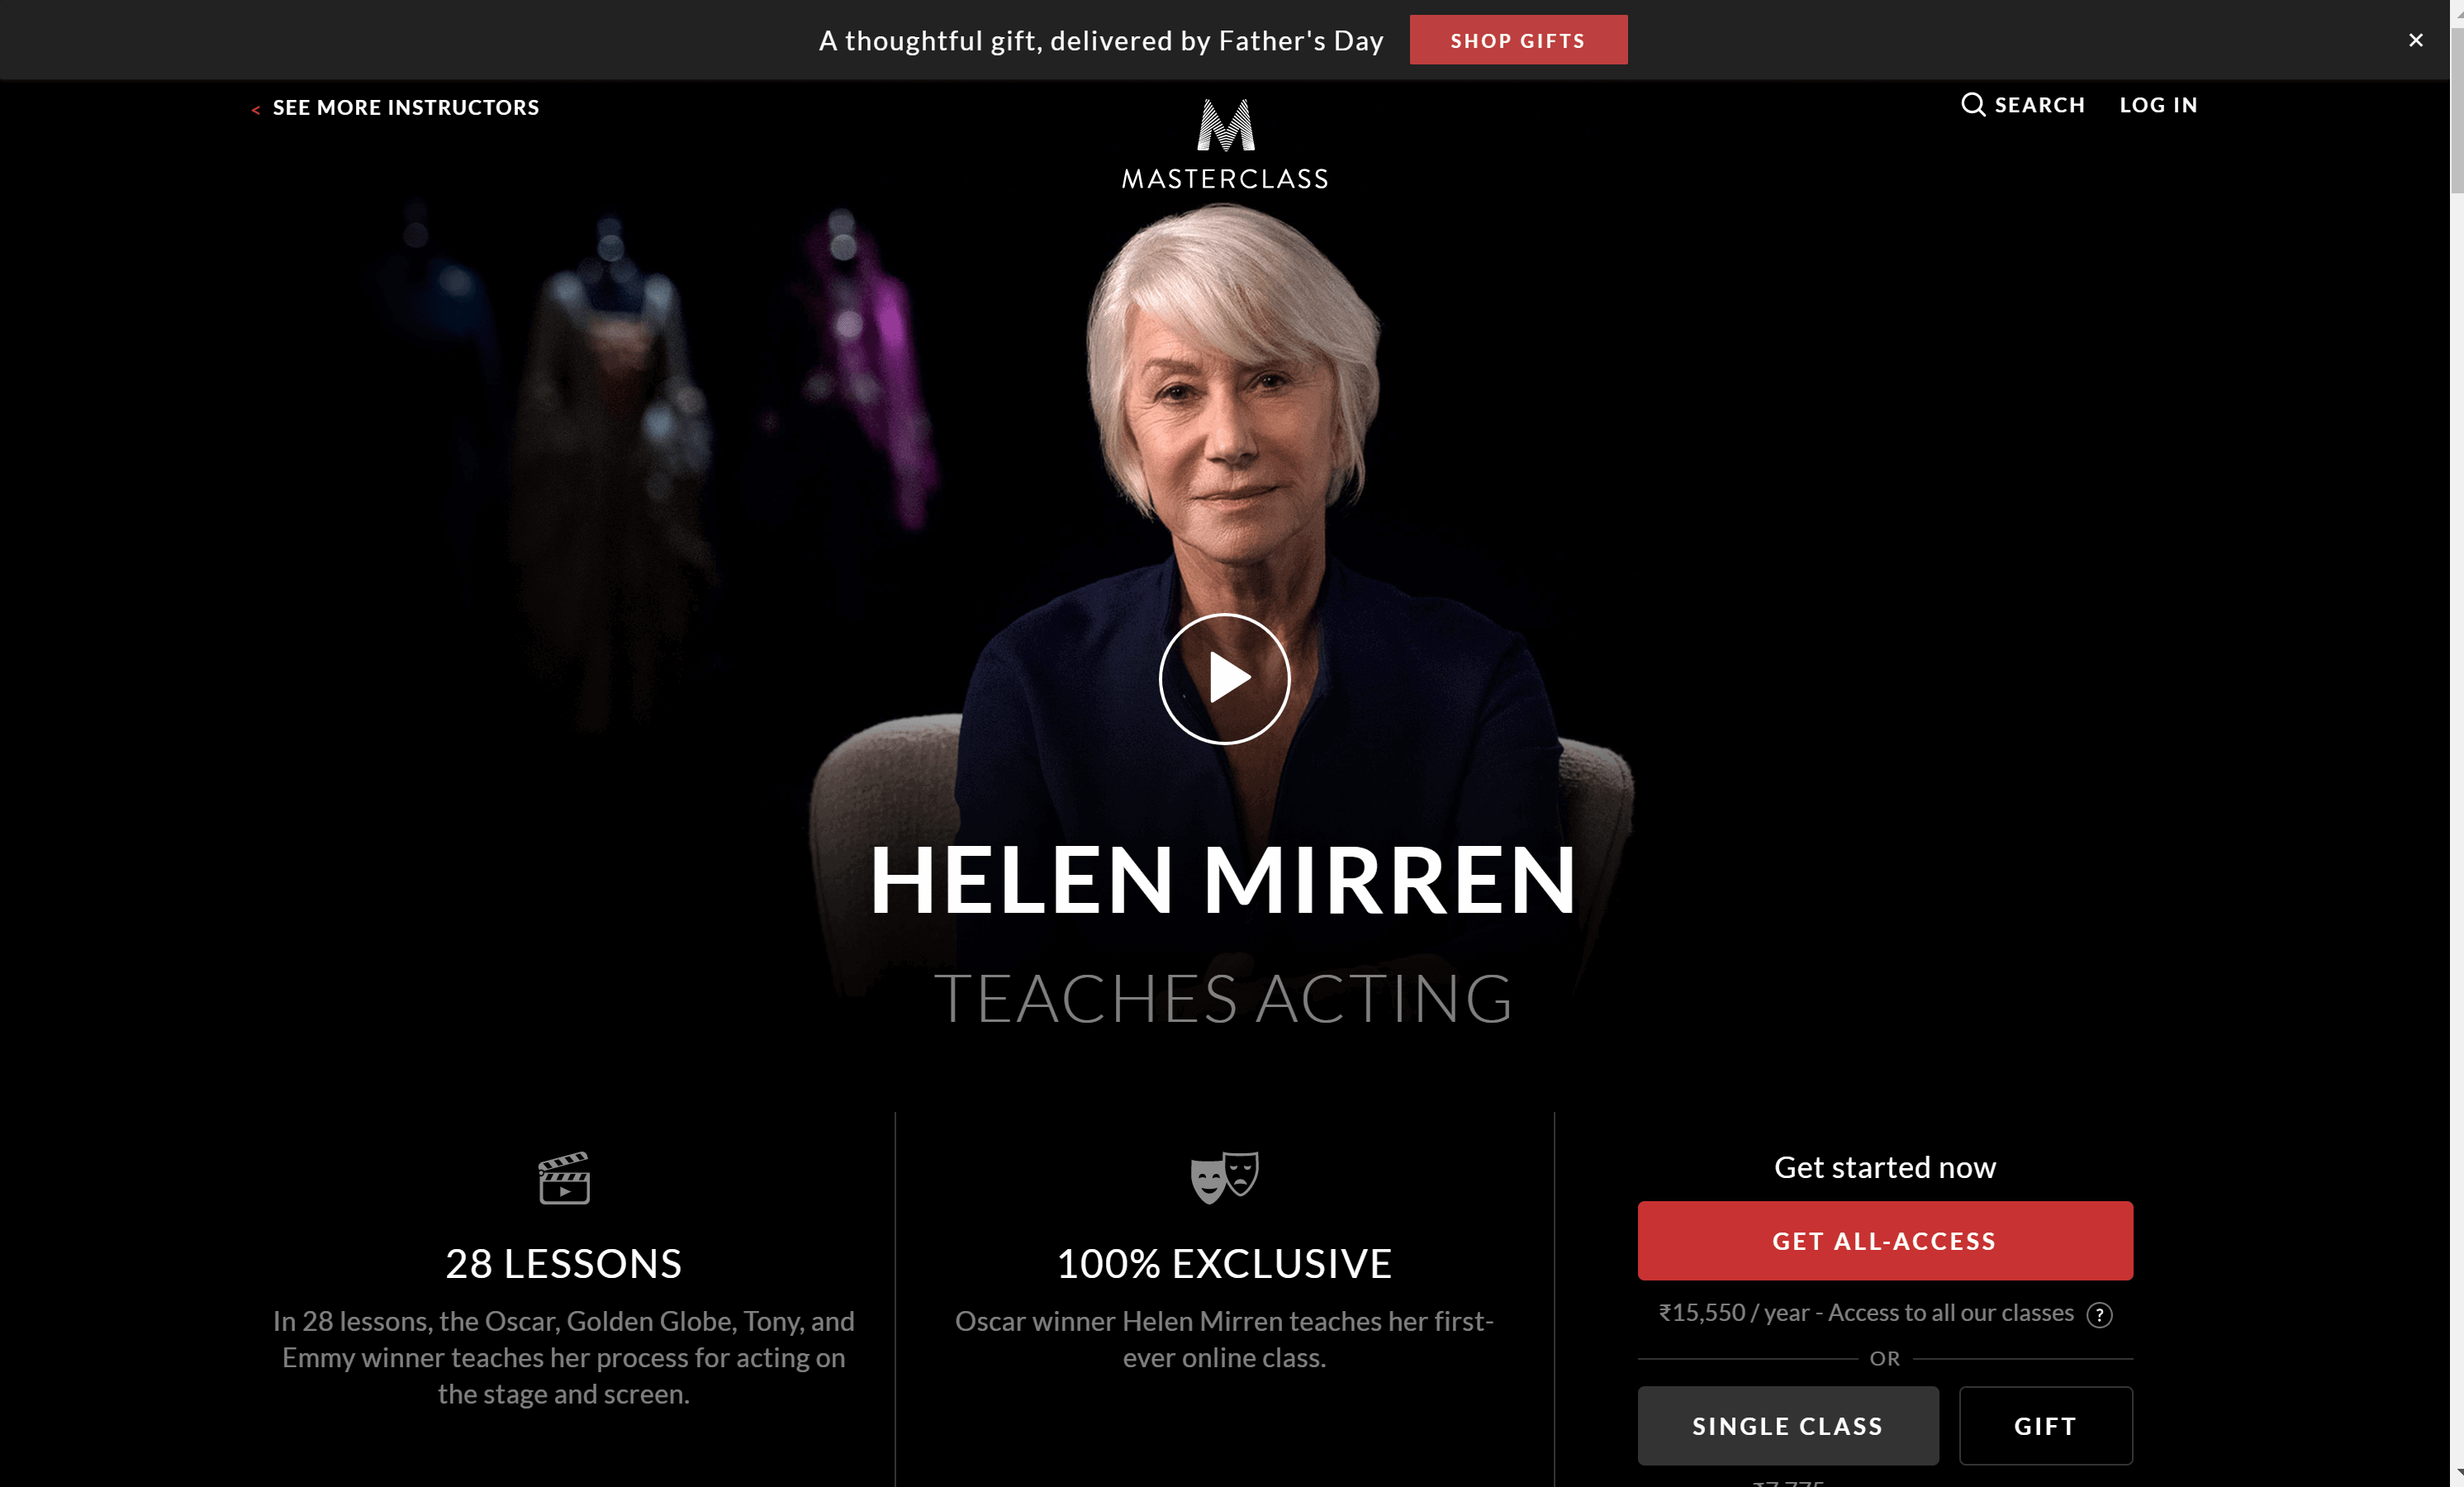 Helen Mirren Masterclass Review